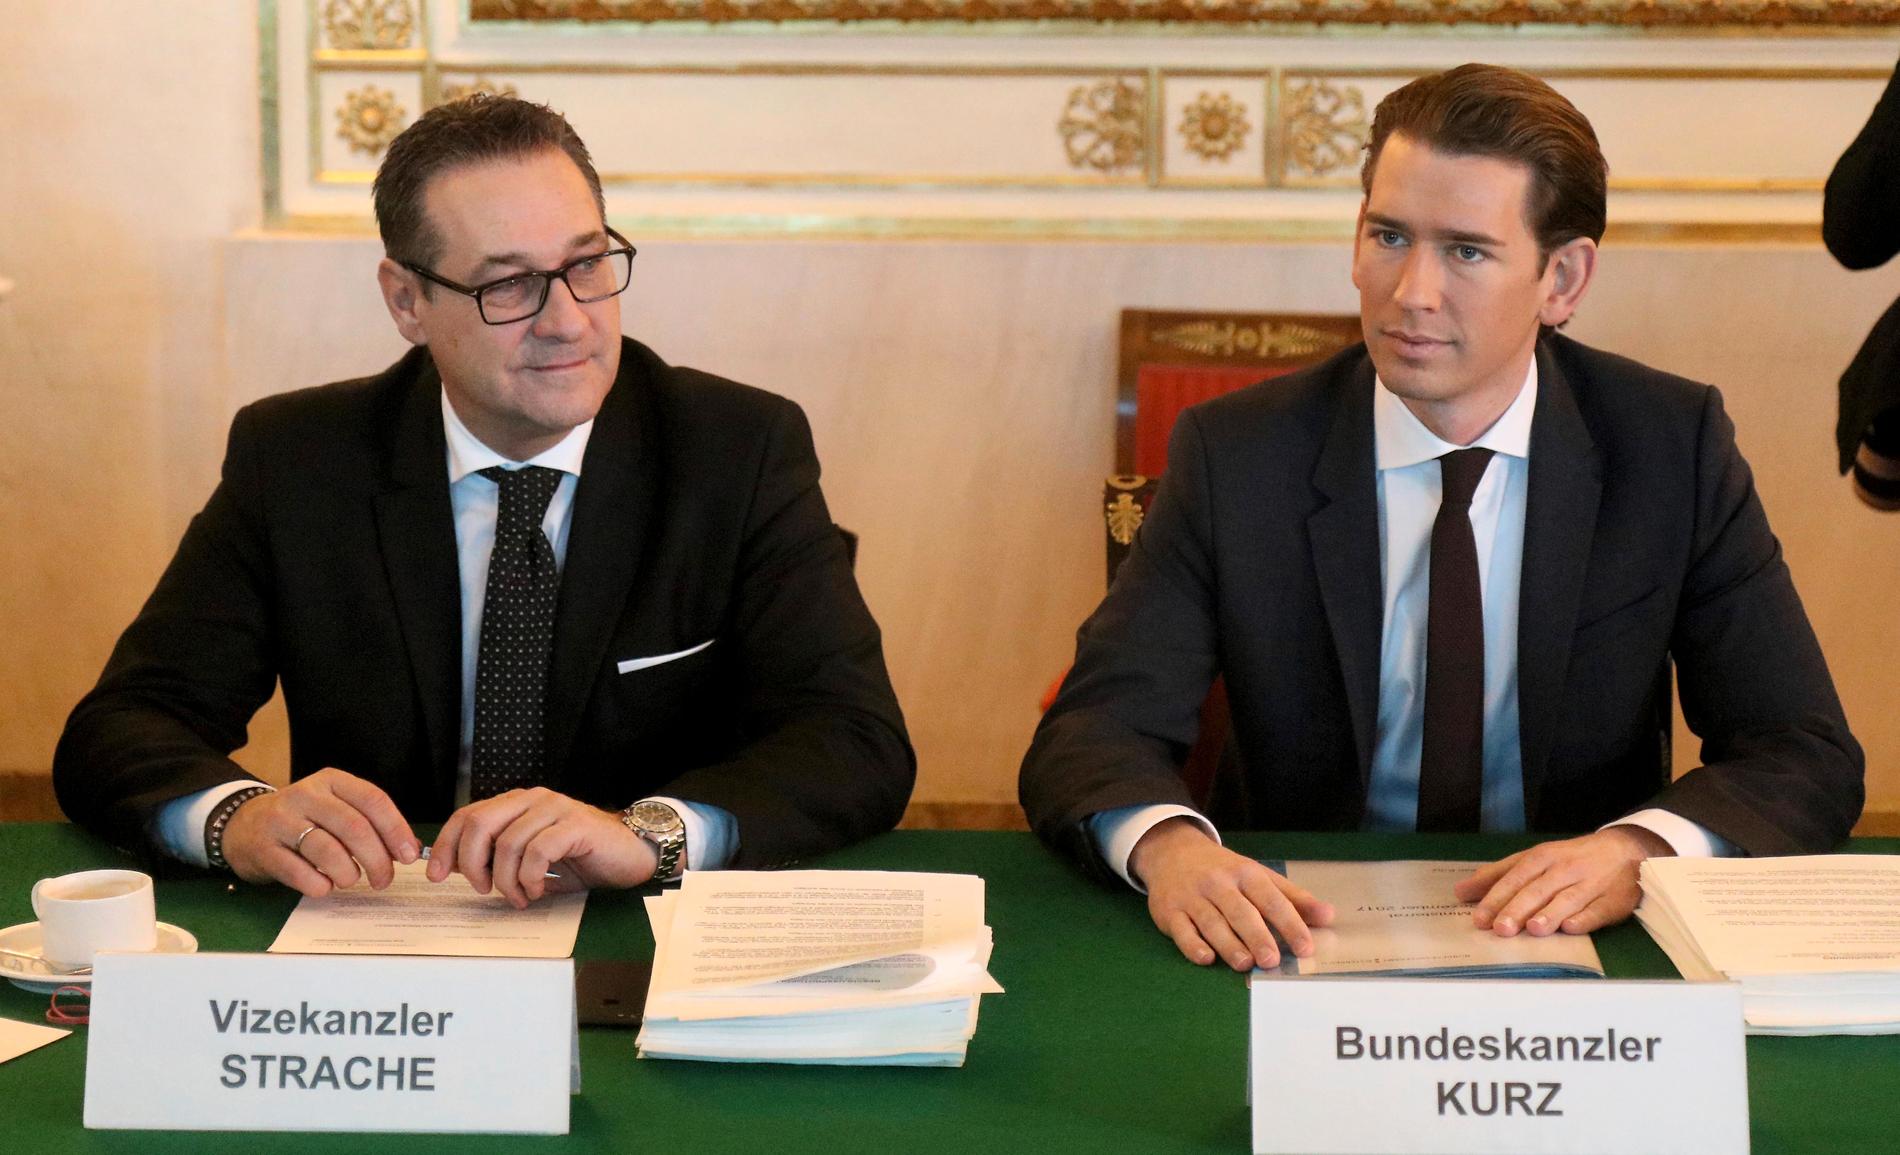 Sebastian Kurz och hans kristdemokratiska parti ÖVP bildade regering med högerextrema FPÖ efter valet 2017. I helgen sprack regeringen efter avslöjanden kring FPÖ-ledaren Heinz-Christian Strache.